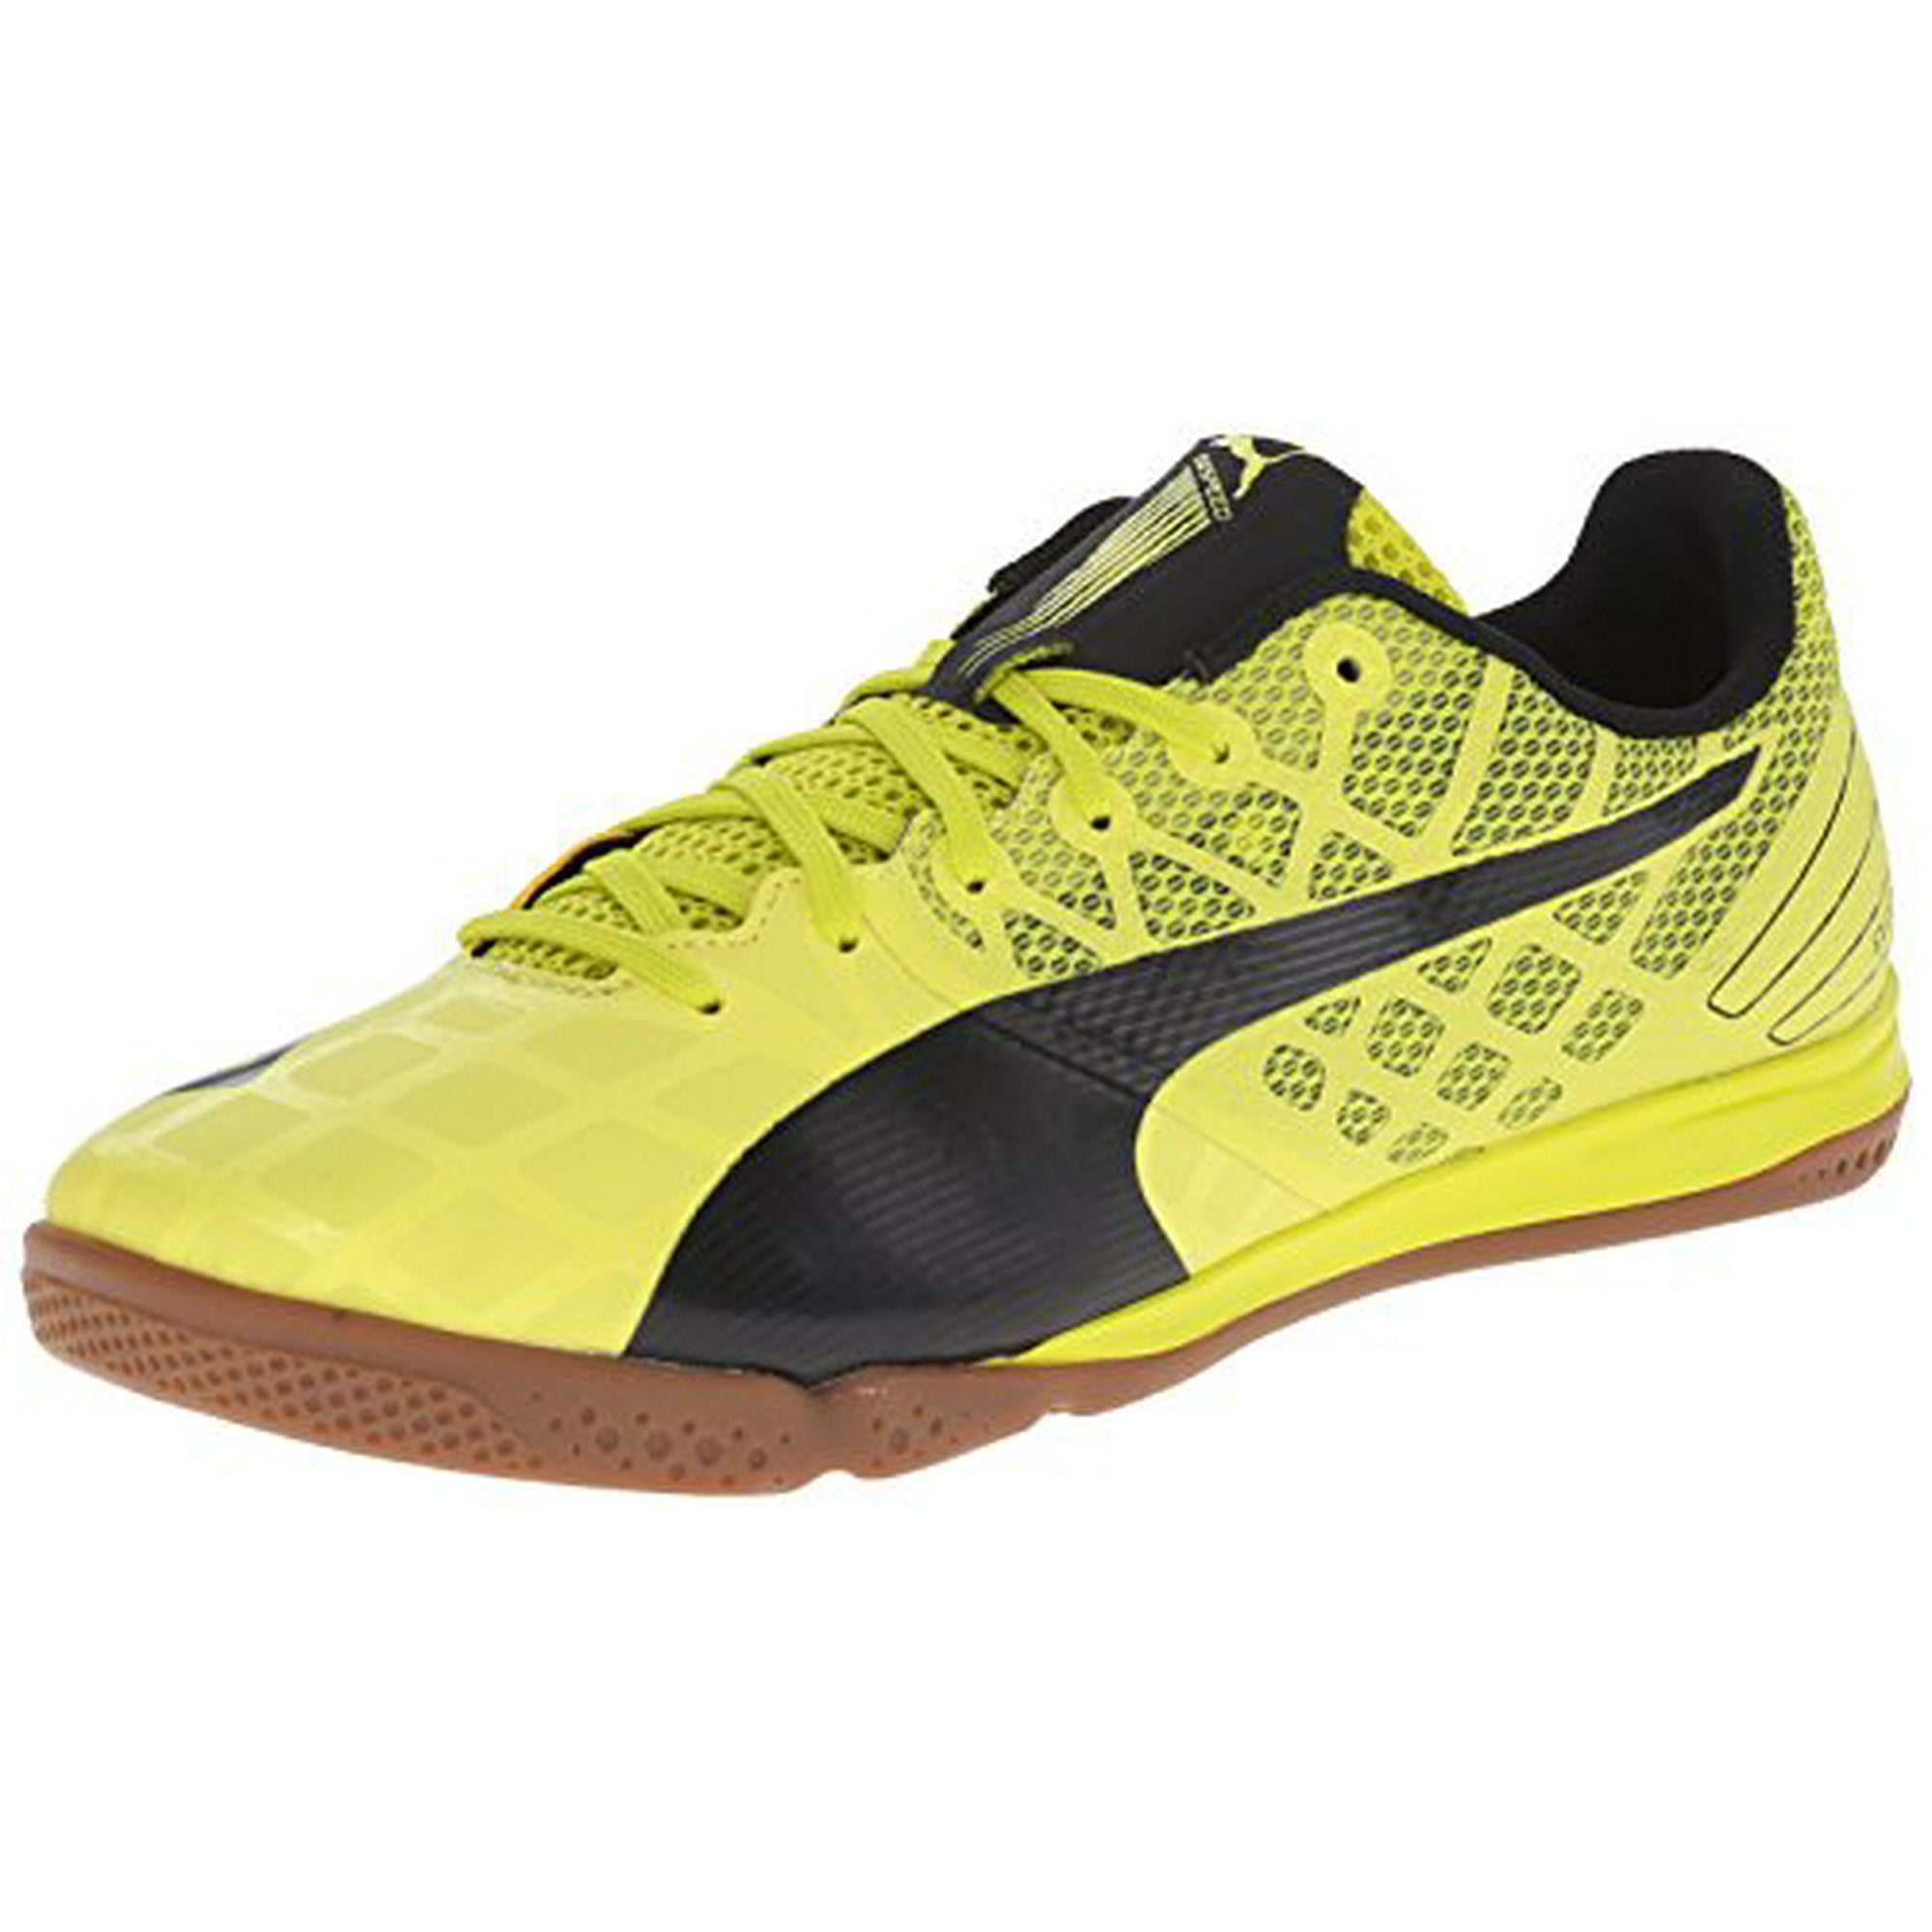 PUMA Men's Evospeed 3.4 Soccer Shoe, Spring/Black, 10 US - Walmart.com